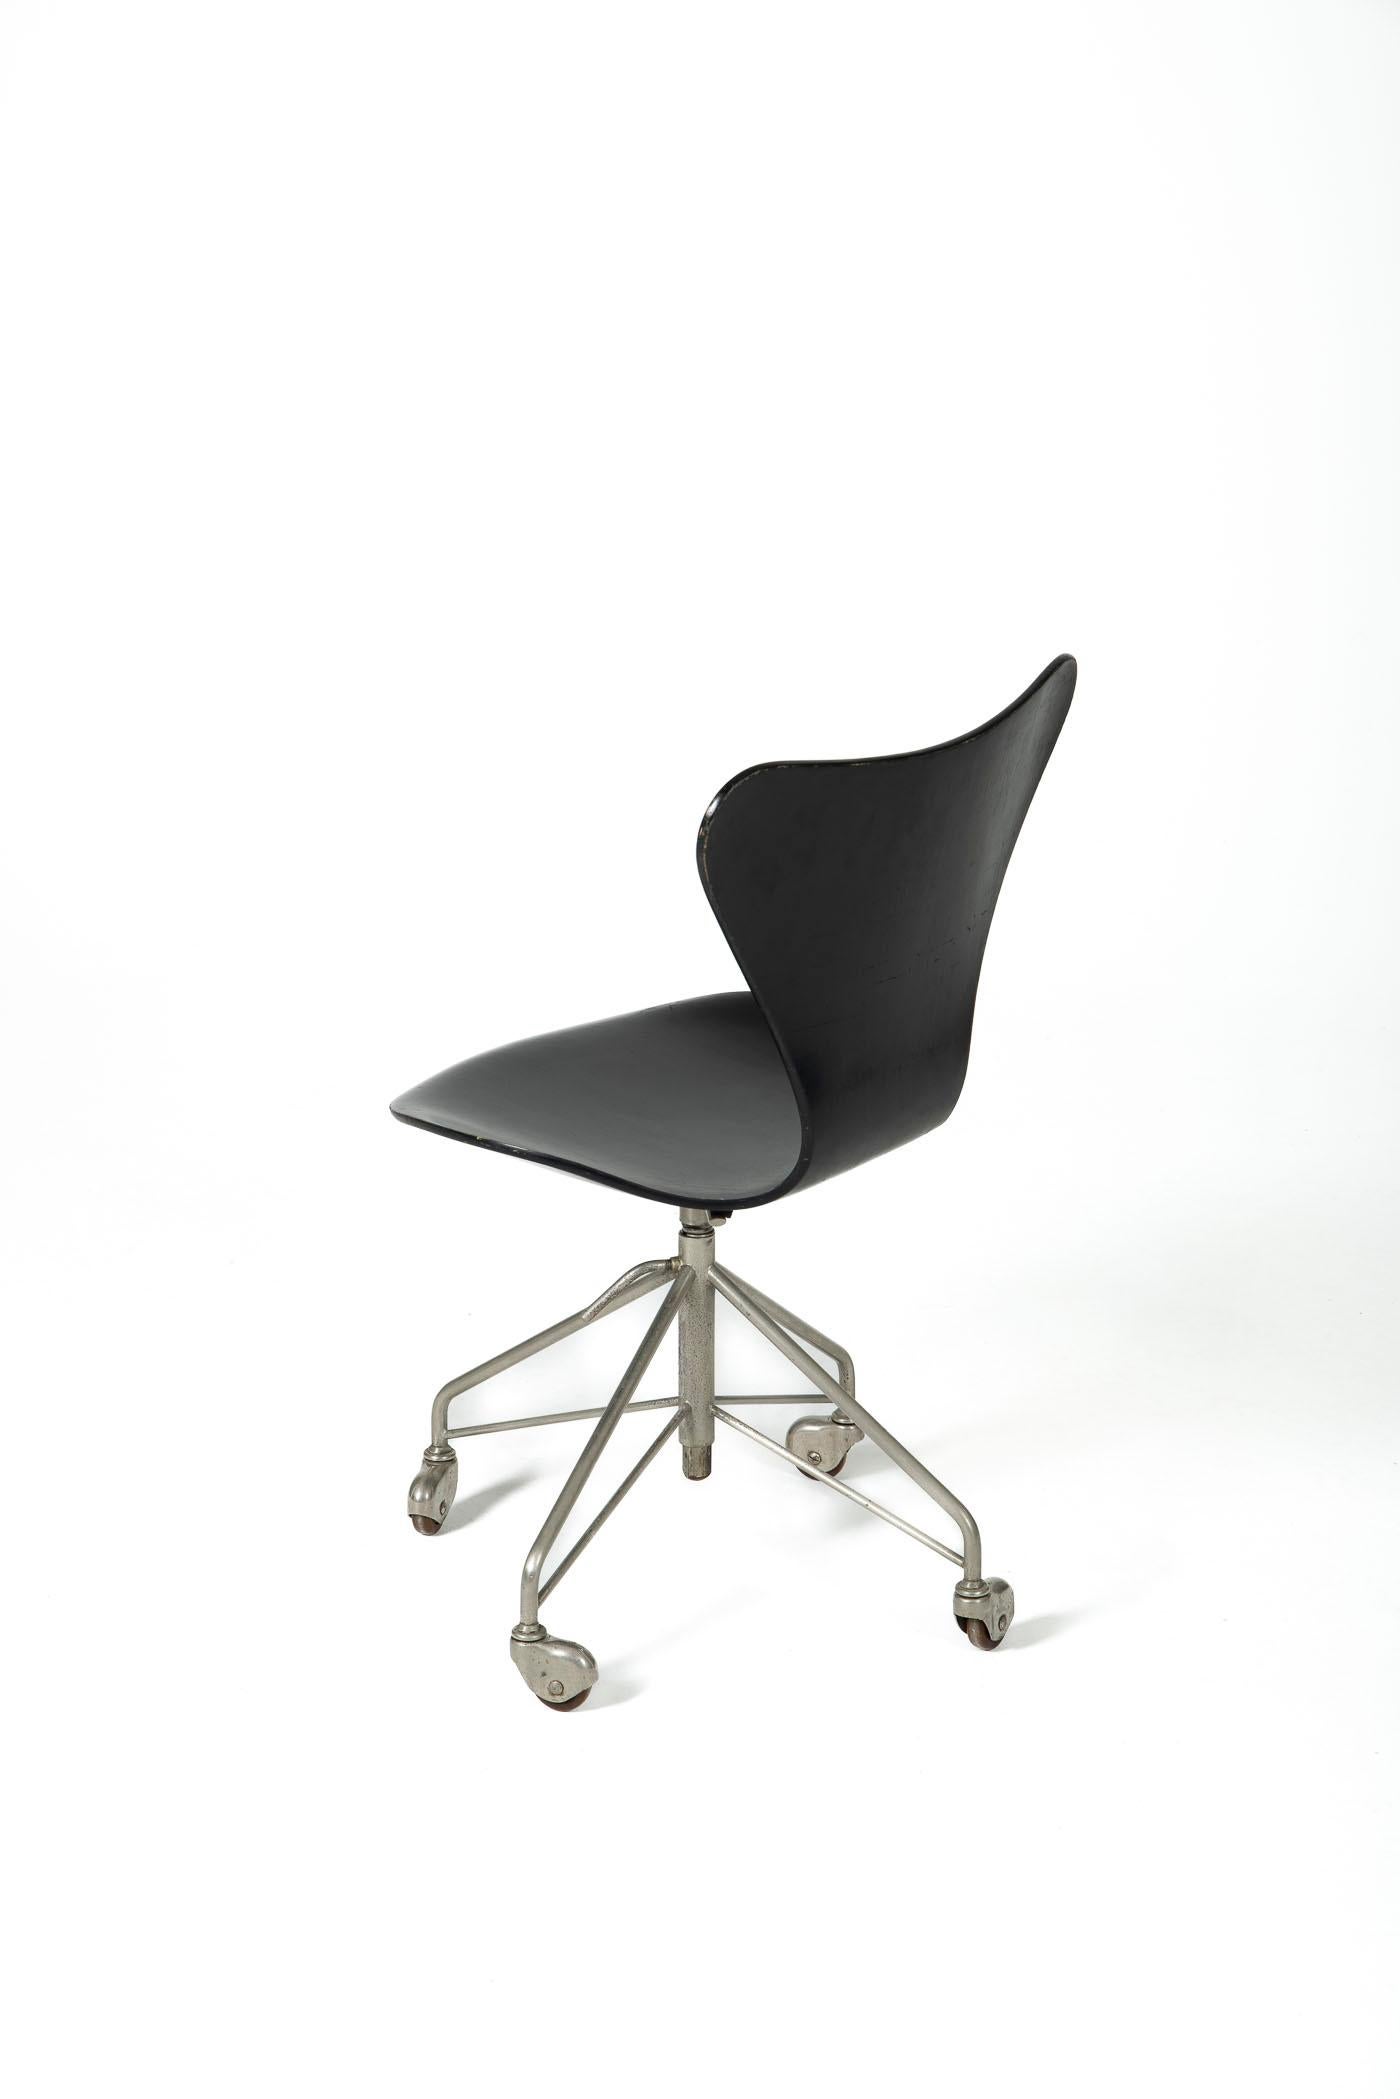 Danish Office Chair 3117 by Arne Jacobsen for Fritz Hansen, Denmark, 1960s For Sale